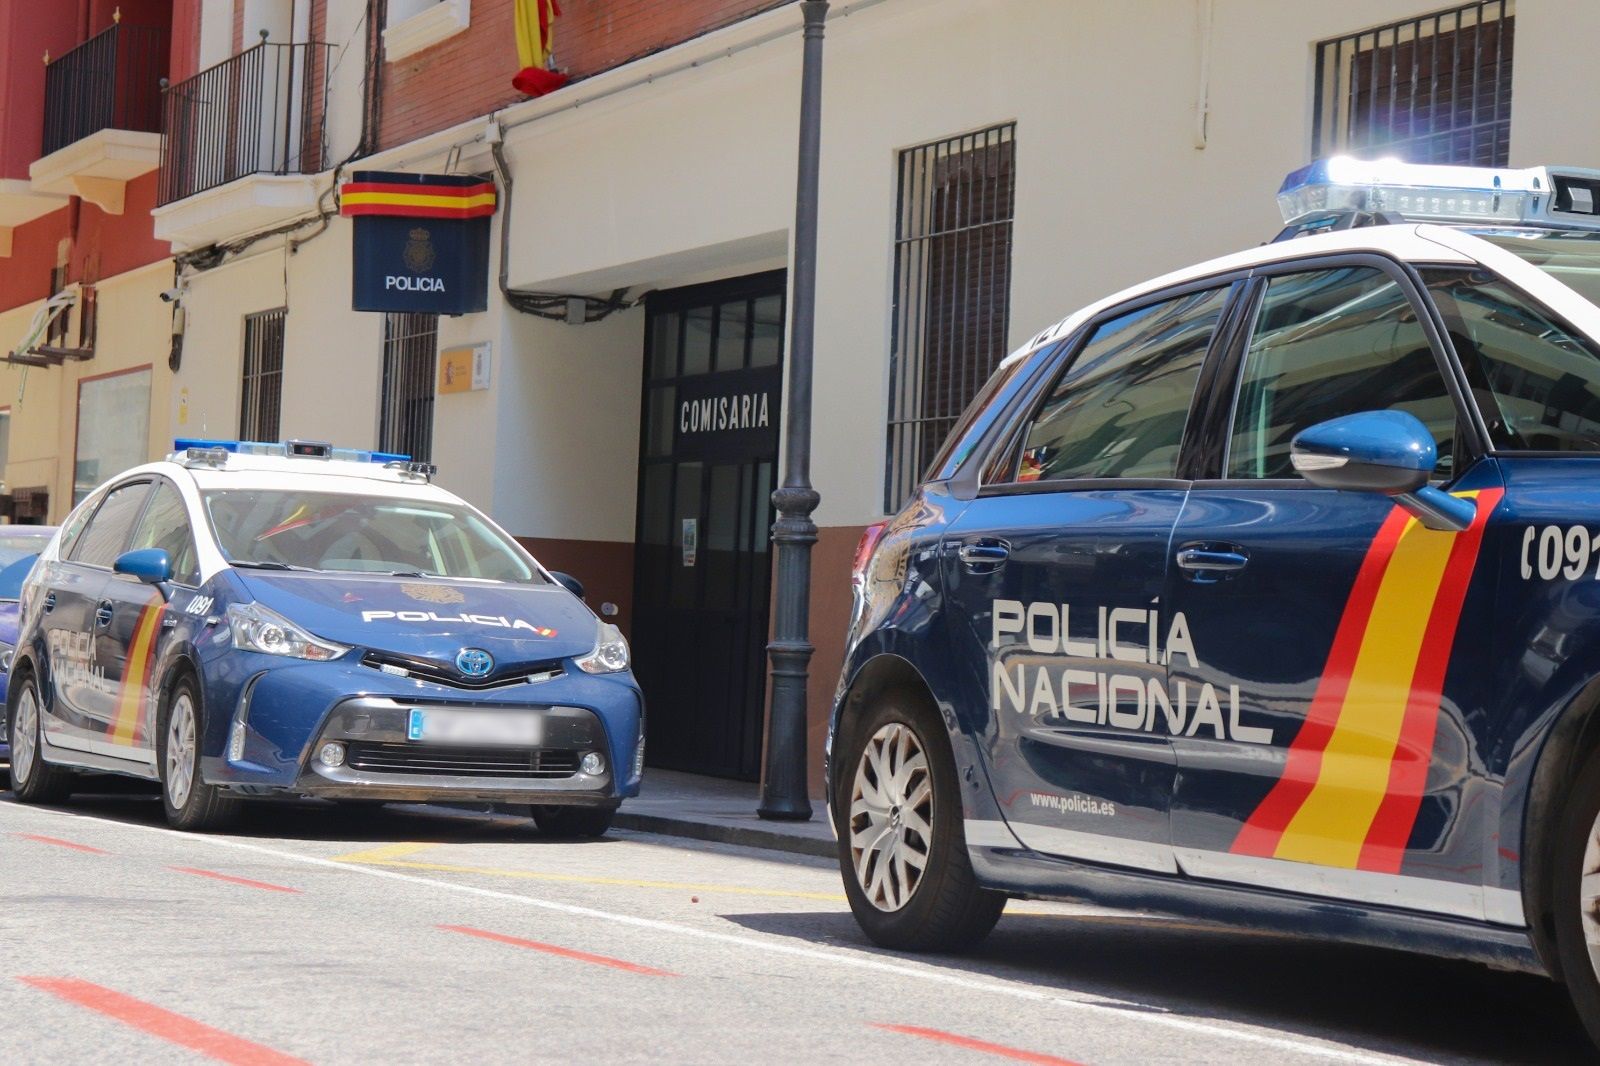 Aparece un hombre muerto y ensangrentado en un coche aparcado junto al Coliseum en A Coruña